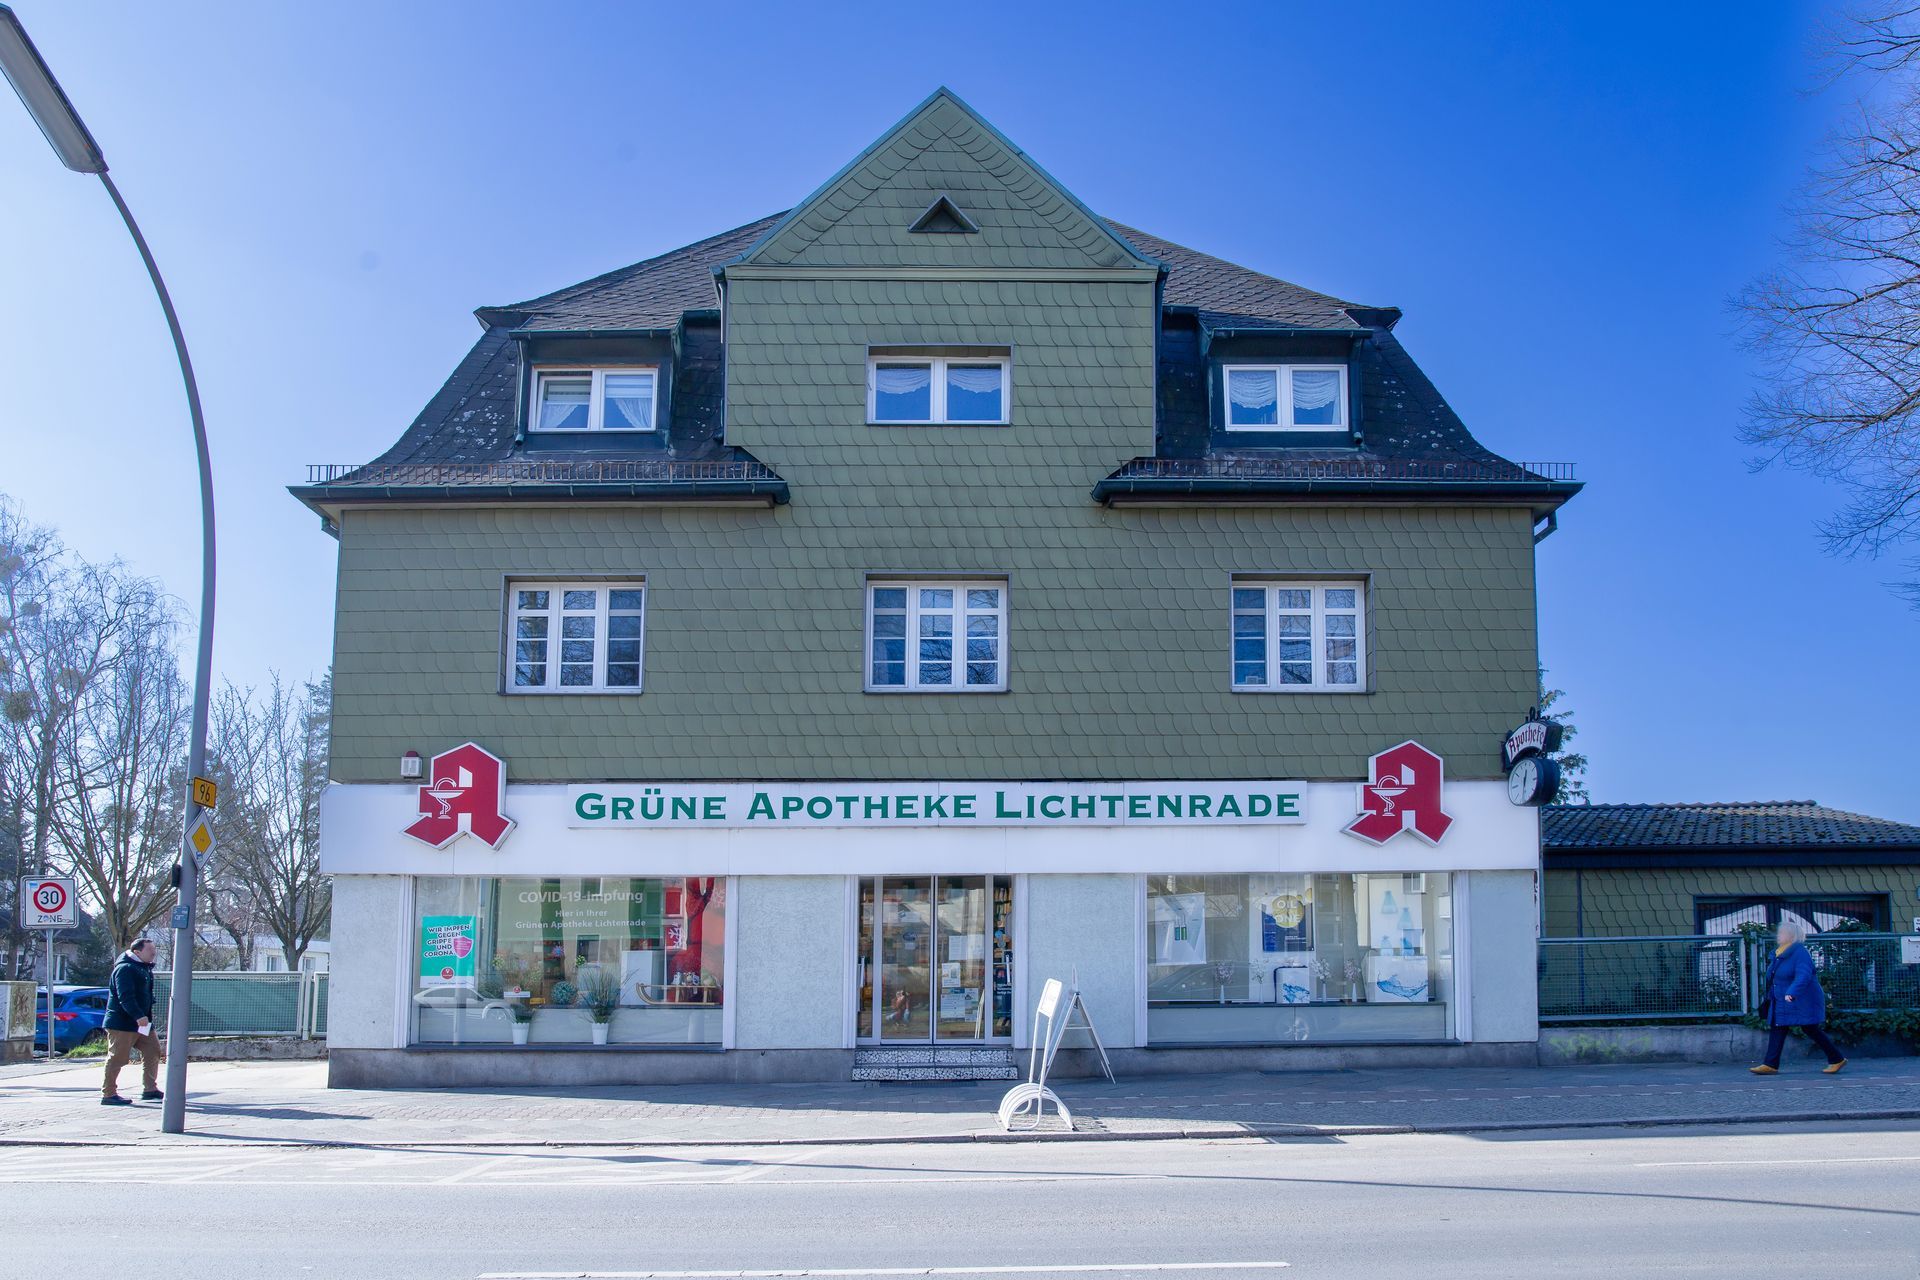 (c) Gruene-apotheke-lichtenrade.de